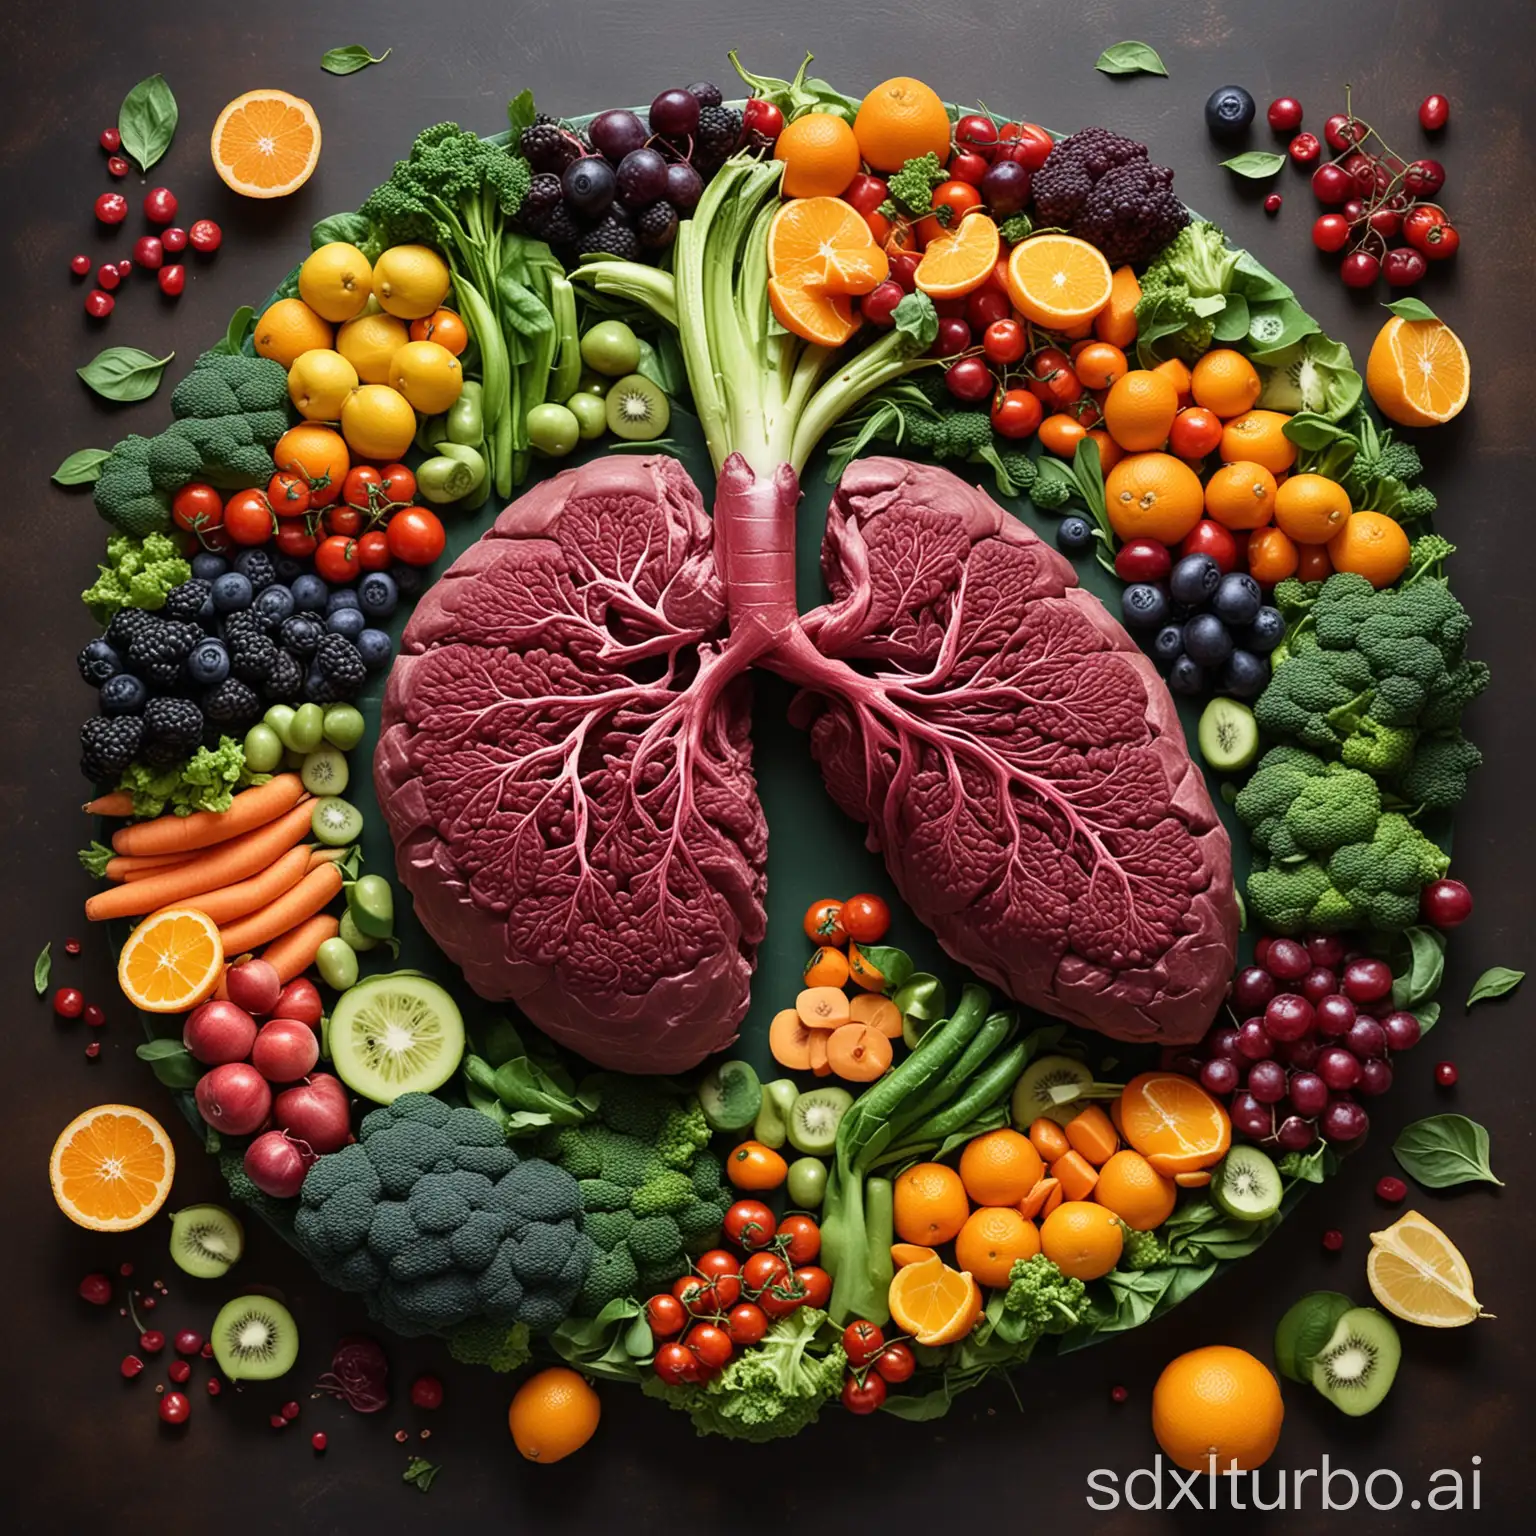 图片：插图显示充满活力、健康的肝脏，周围环绕着代表排毒的各种水果和蔬菜。
描述：想象一下郁郁葱葱、绿色的肝脏焕发着活力，周围环绕着各种色彩缤纷的水果和蔬菜，象征着谷胱甘肽的解毒力量。 亮丽的橙色、深紫色和青翠的绿色展示了支持排毒和免疫功能的多种营养物质。 说明文字：“用谷胱甘肽滋养您的身体，让肝脏充满活力并增强免疫系统。这个瓶子是个黑色包装白色盖子的，里面的胶囊也是黑色的#Detox #ImmuneBoost”